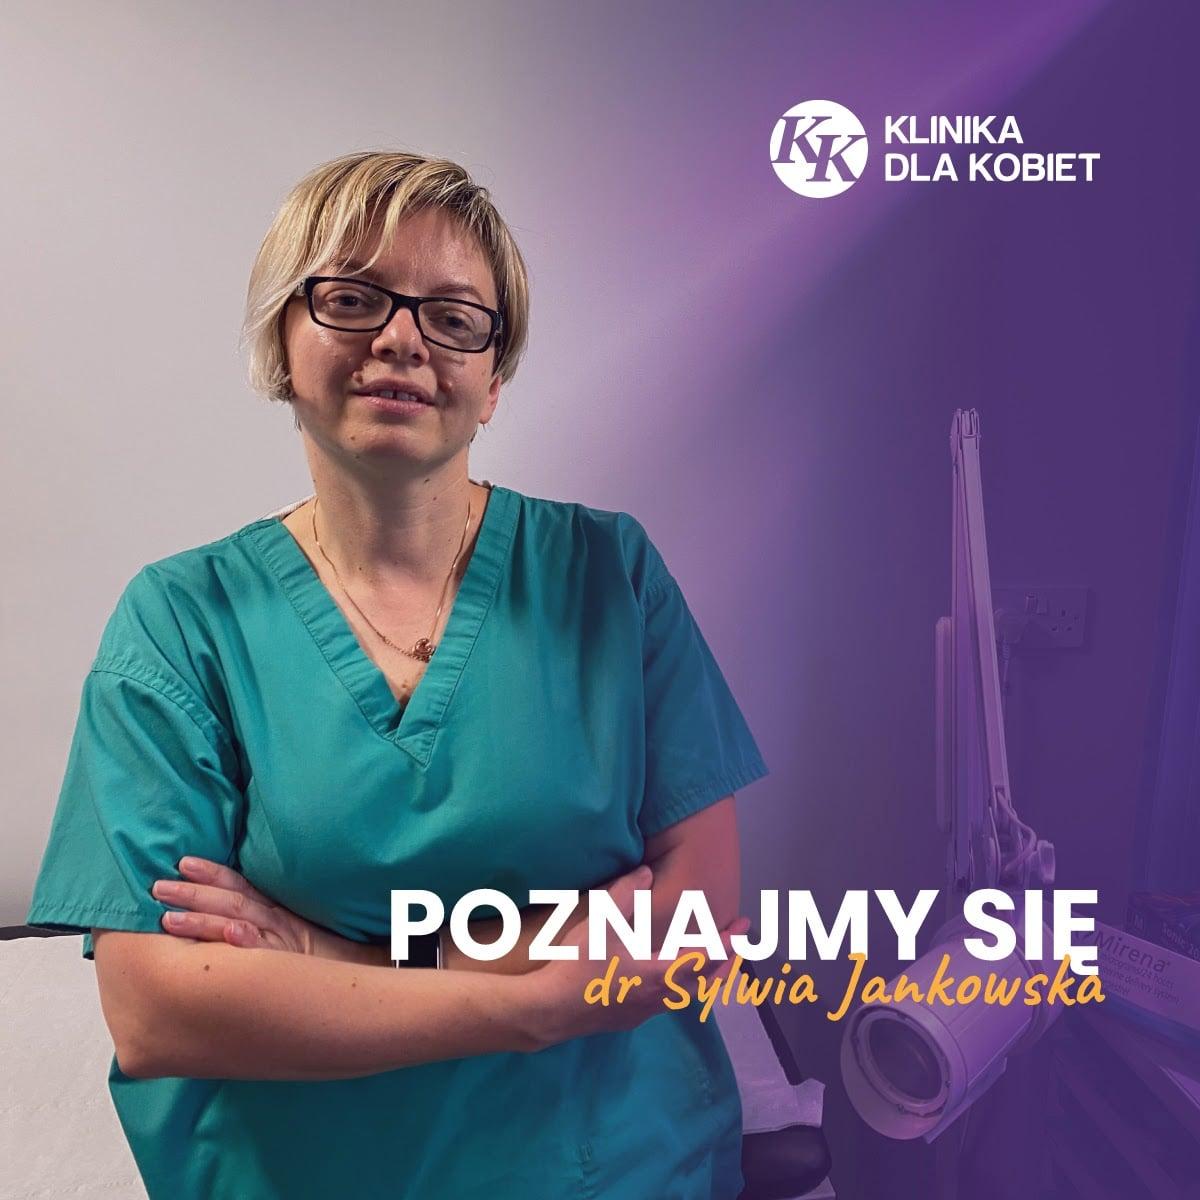 Dr Sylwia Jankowska - Klinika dla kobiet